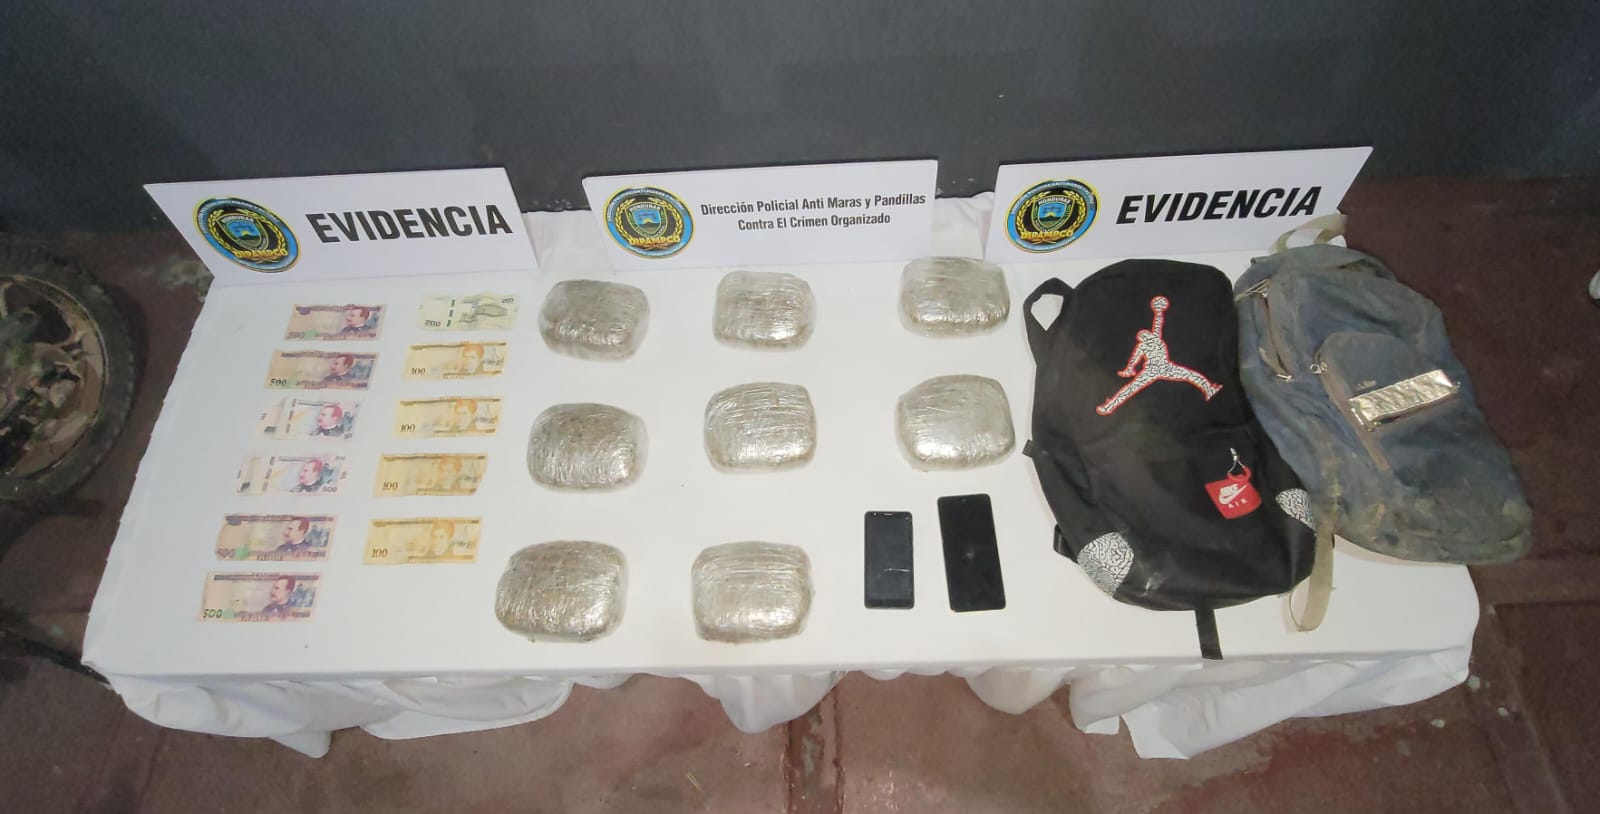 Agentes de DIPAMPCO capturan a dos  productores de marihuana en Comayagua